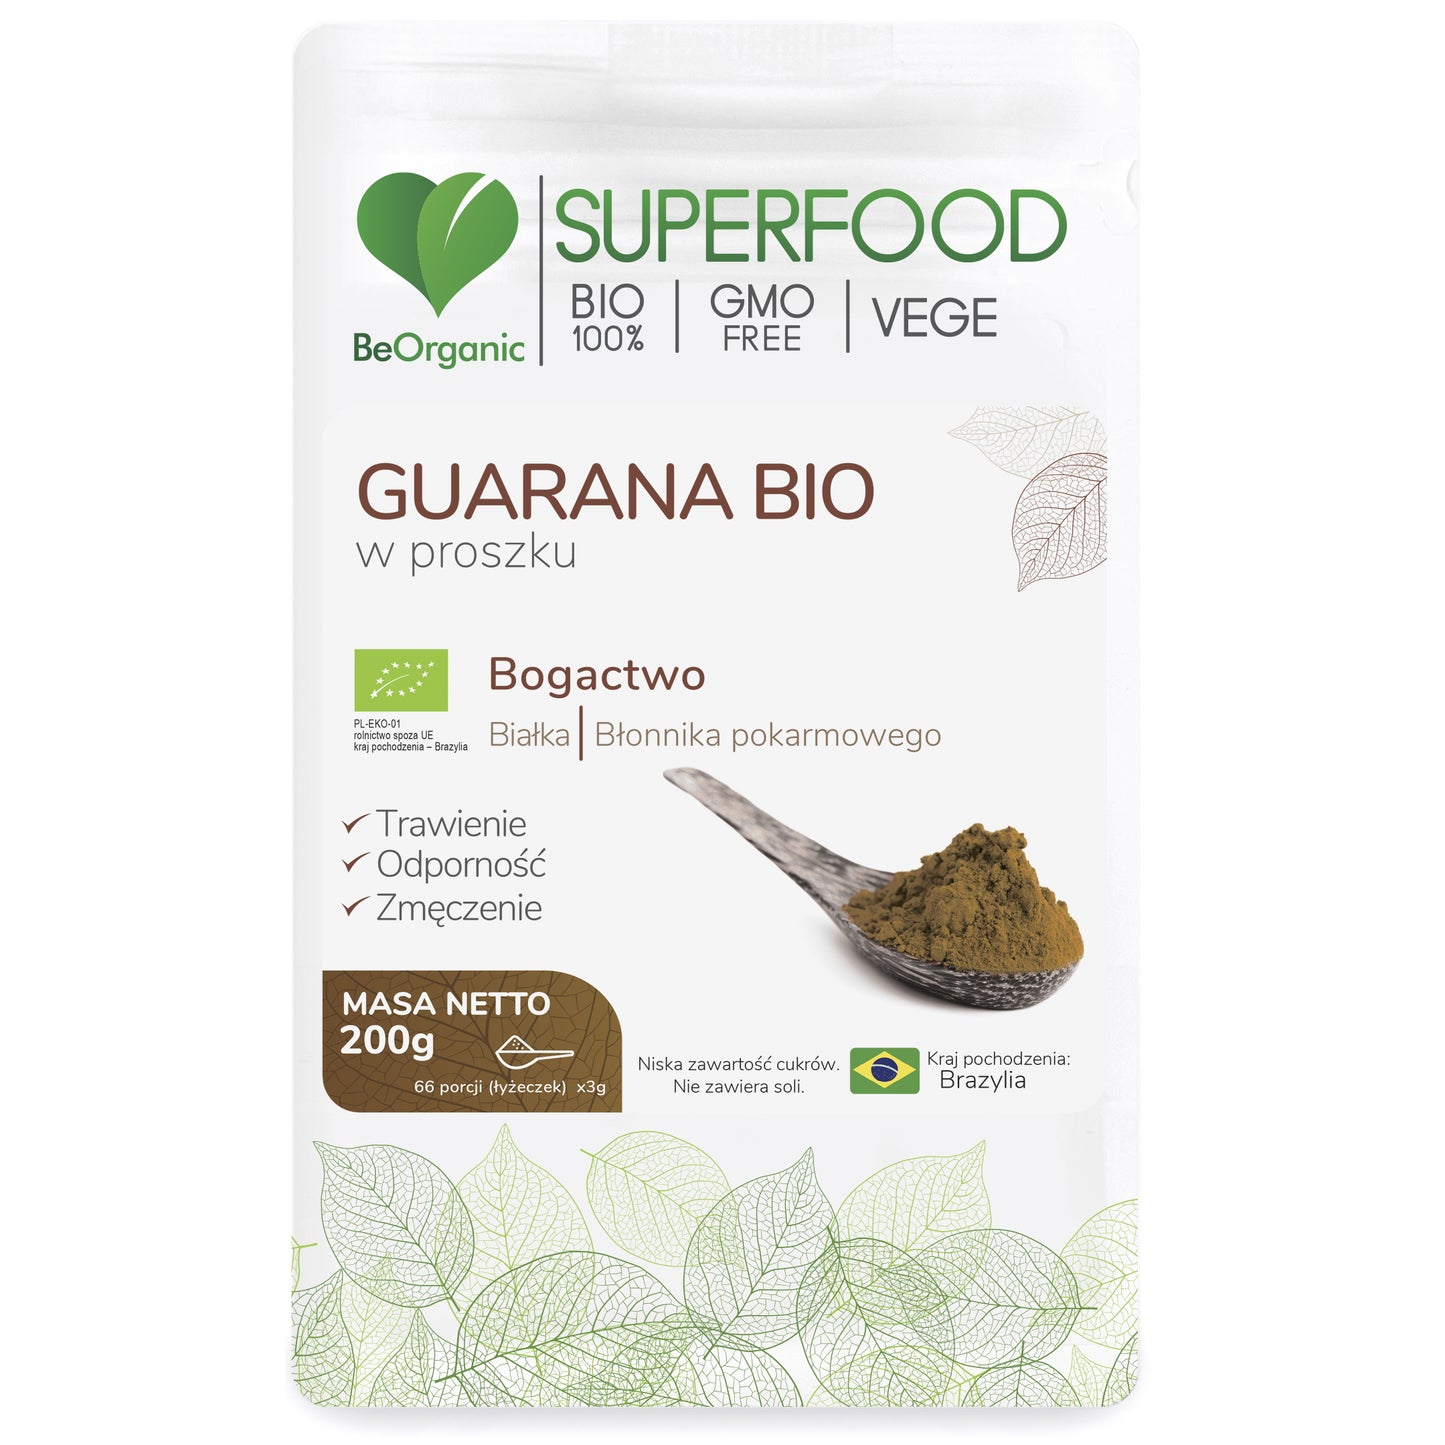 BeOrganic Organiczna guarana w proszku, 200g